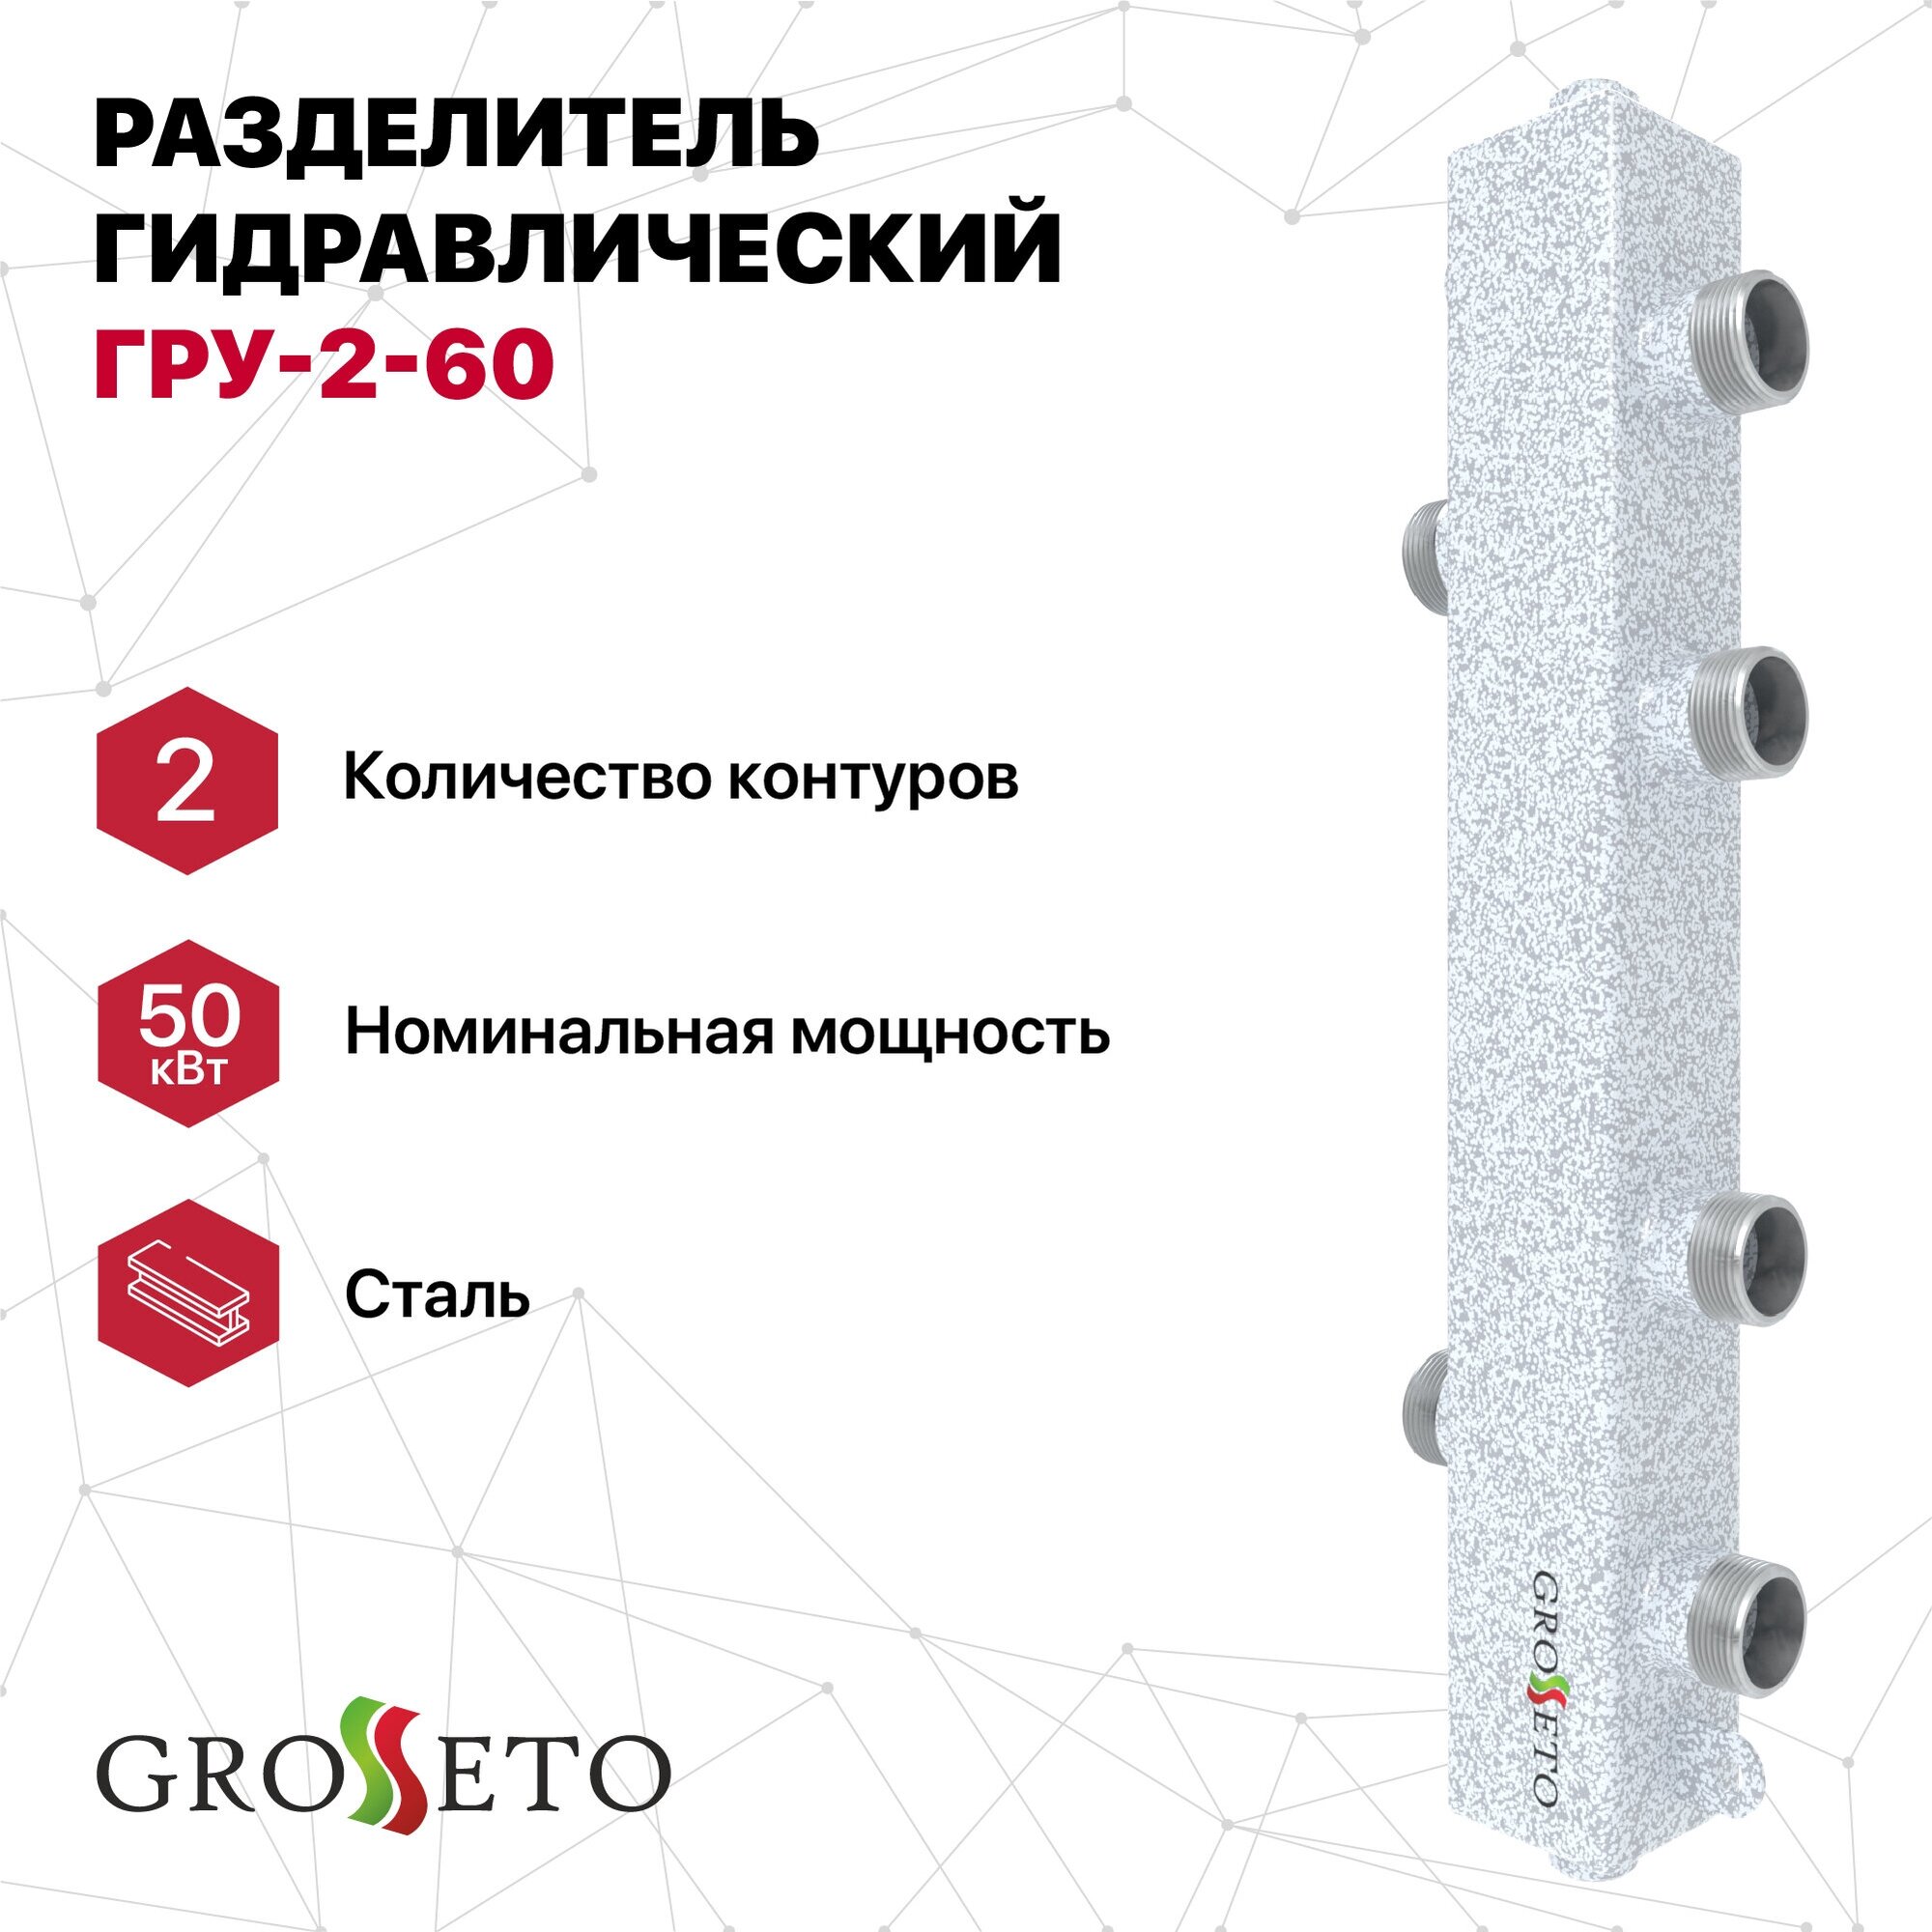 Разделитель гидравлический GROSSETO ГРУ-2-60 (Север - 60К2)